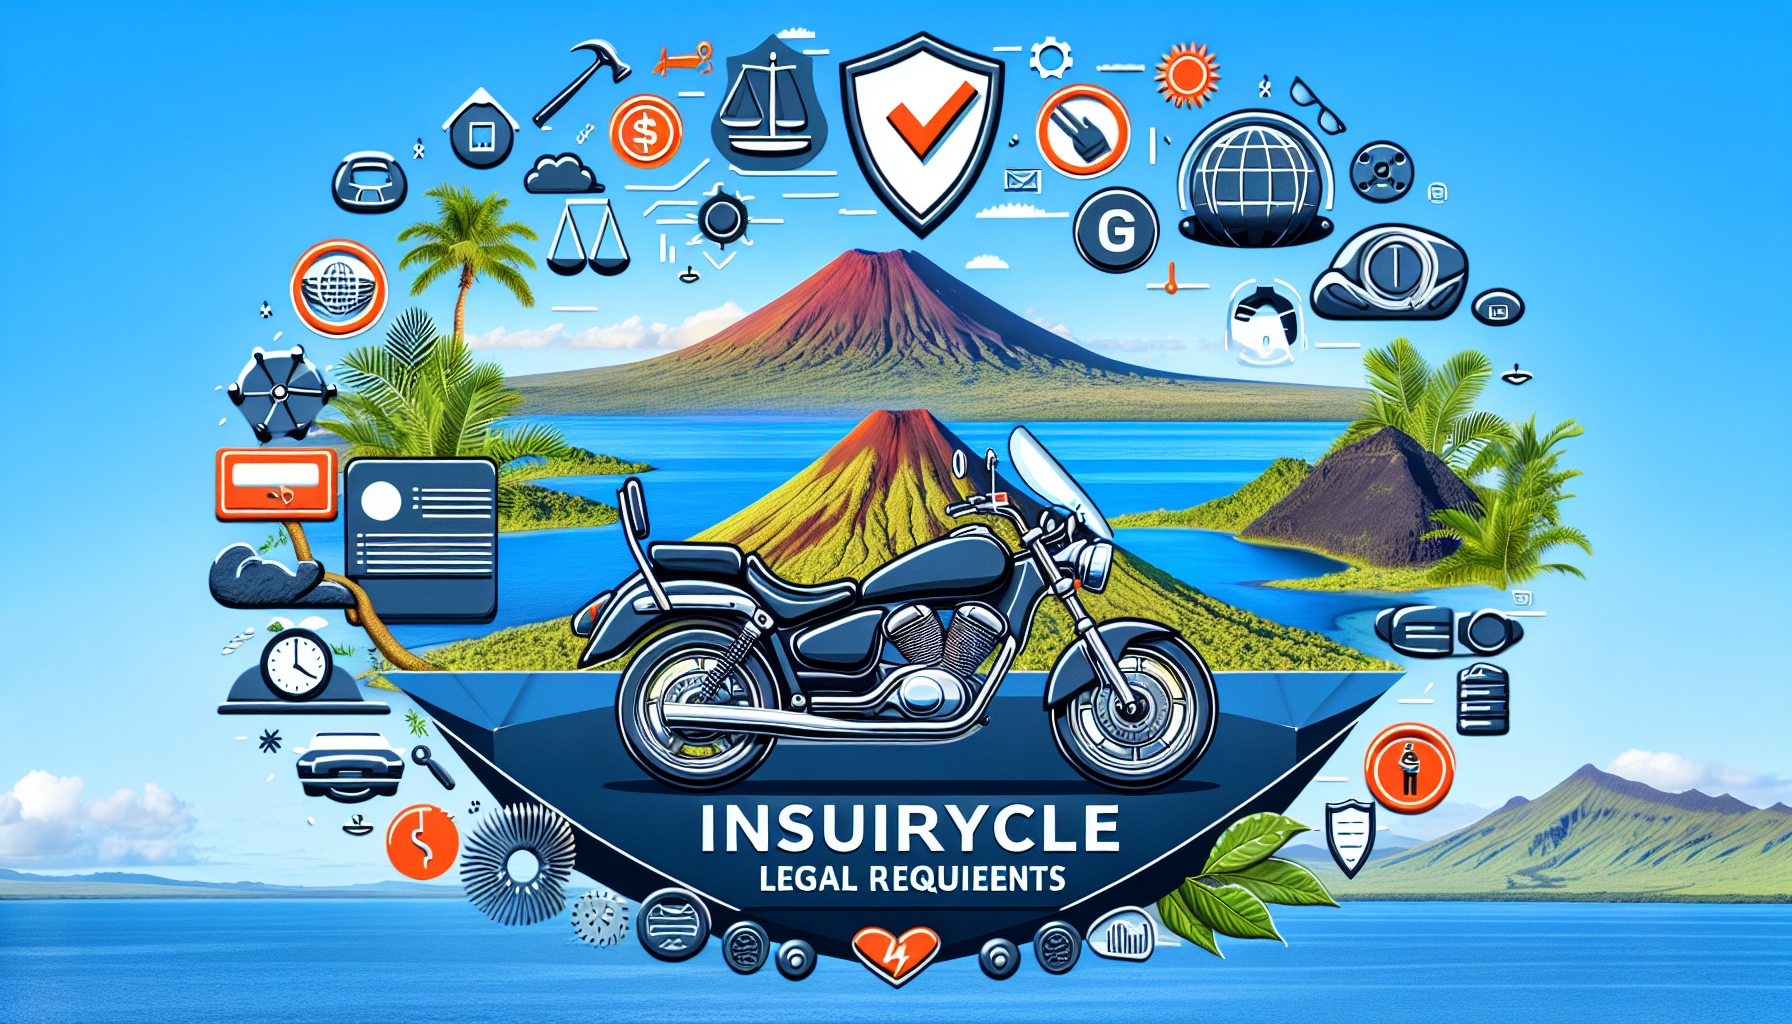 découvrez les obligations légales pour l'assurance moto à la réunion et obtenez les meilleures offres d'assurance moto sur l'île. protégez-vous et roulez en toute sécurité avec notre guide complet.